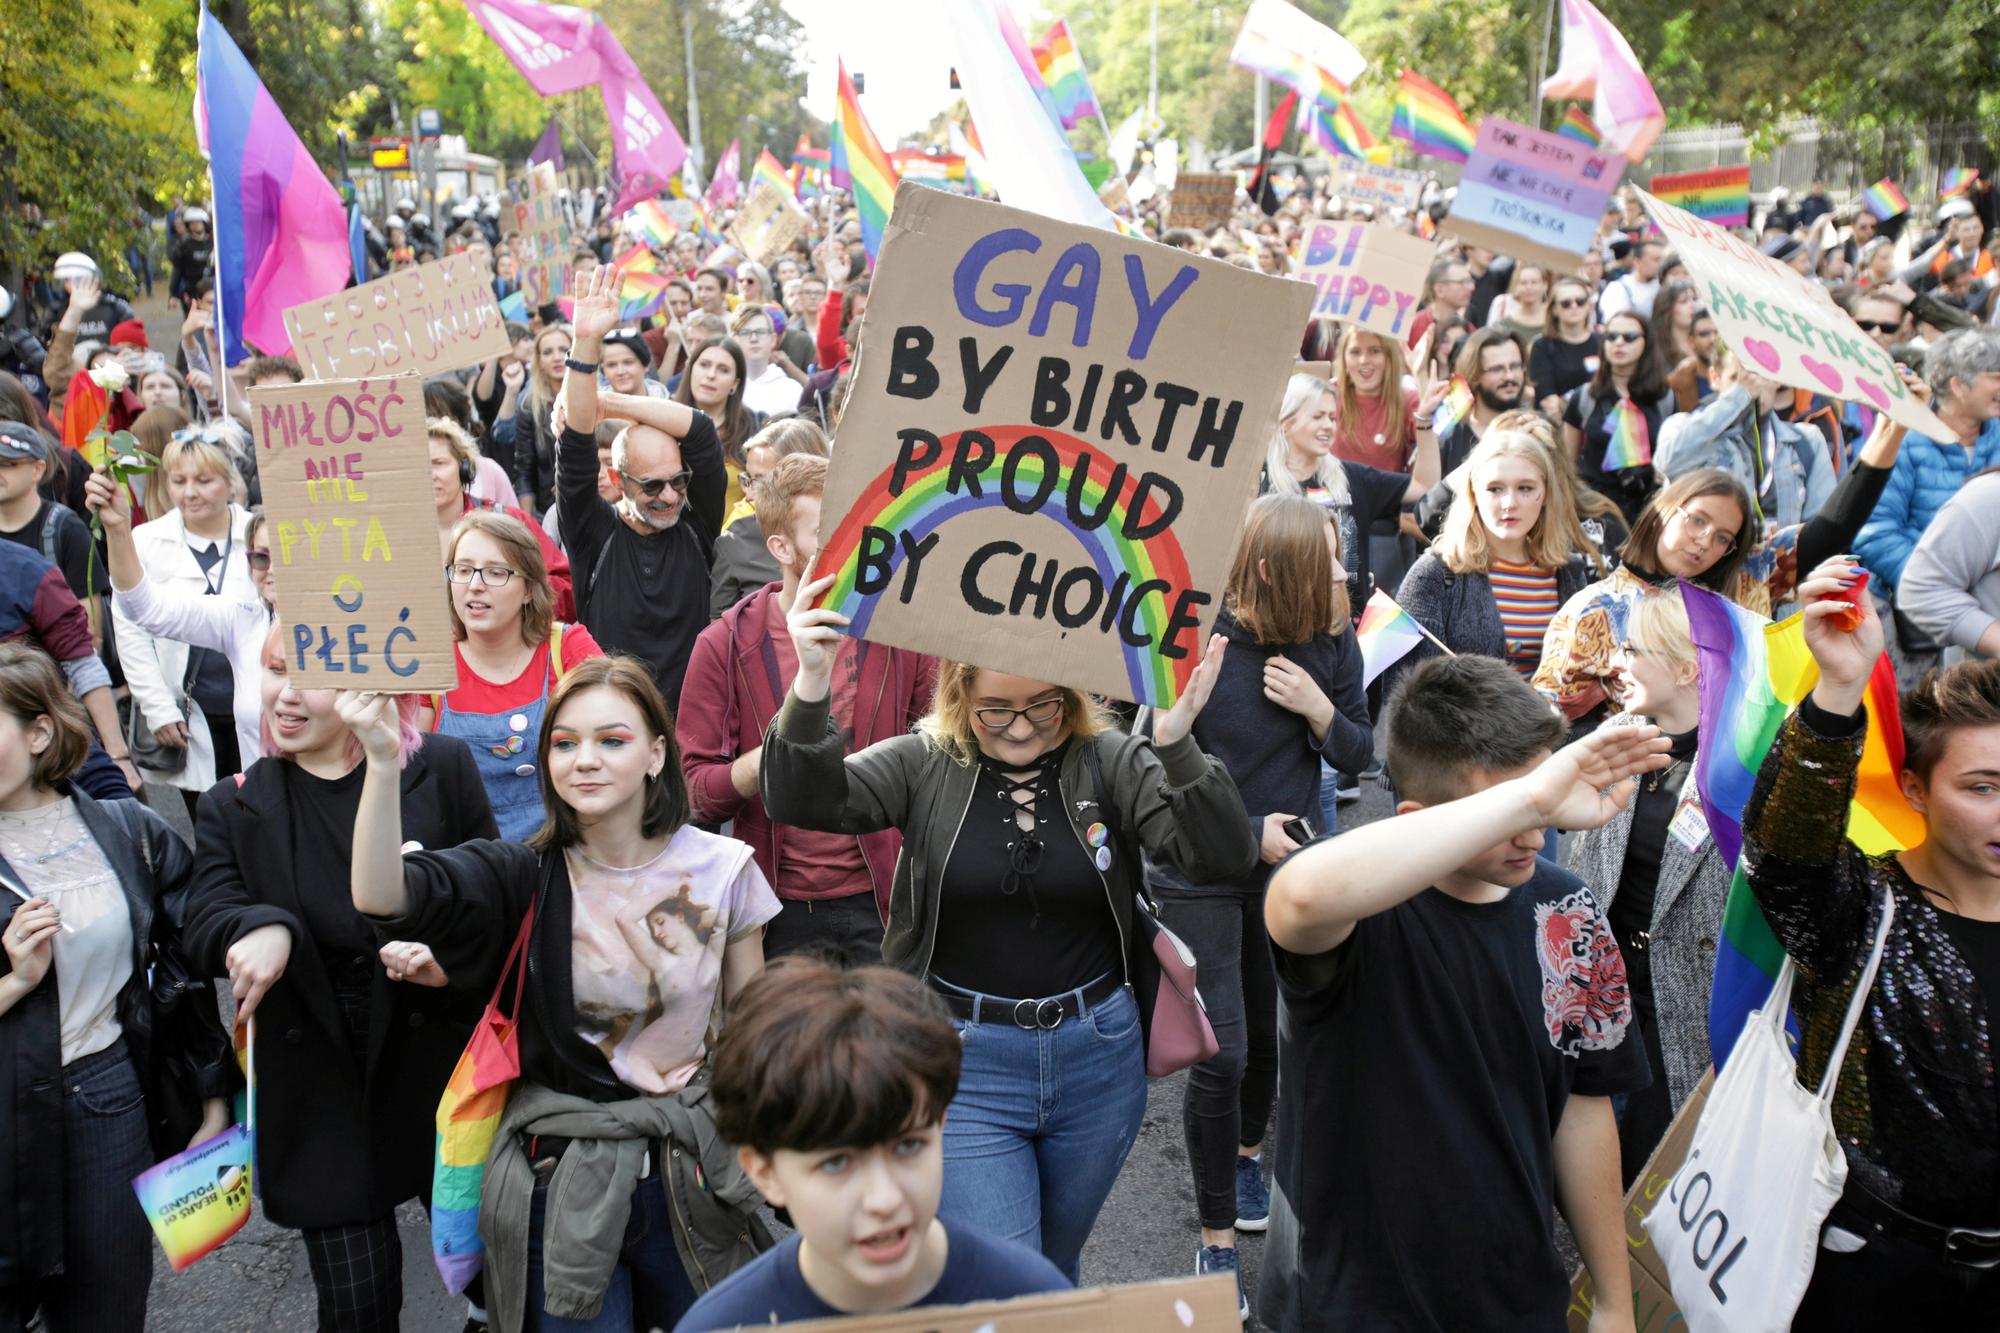 "Je suis née gay, je suis fière par choix", dit la pancarte de cette participante de la Marche des Fiertés de Lublin, en Pologne, le 28 septembre 2019. [Reuters/Agencja Gazeta - Jakub Orzechowski]